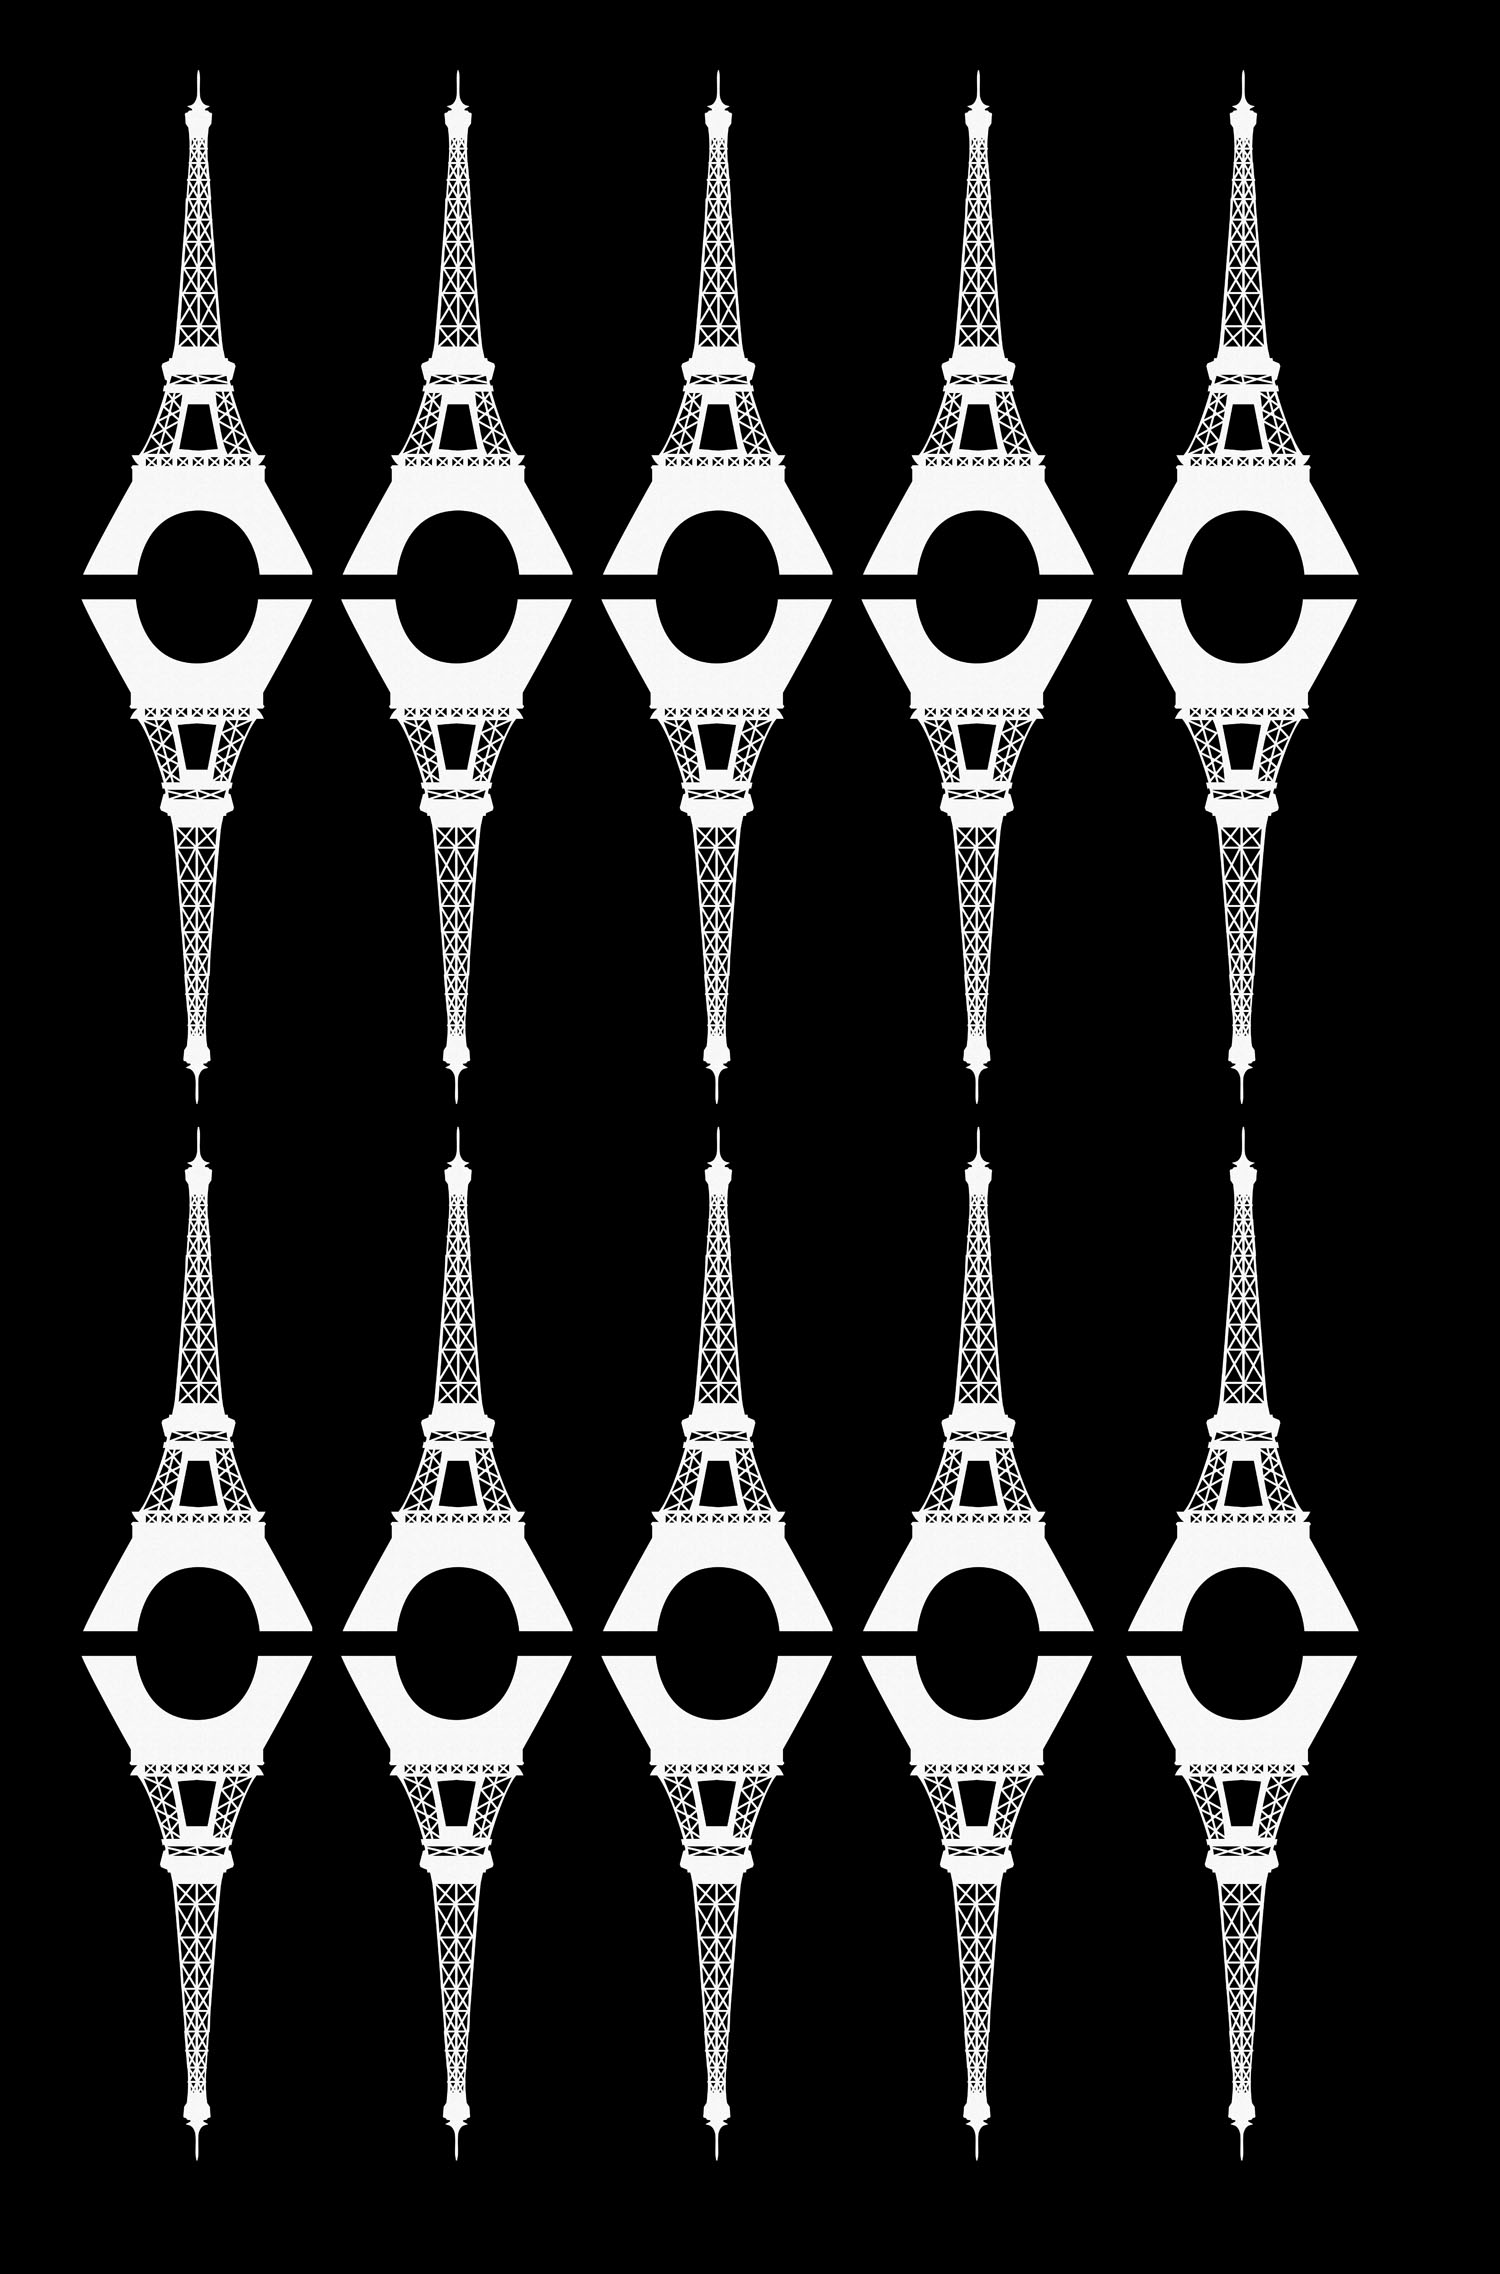 Coloriage difficile de la Tour Eiffel sur fond noir avec une disposition tr¨s originale